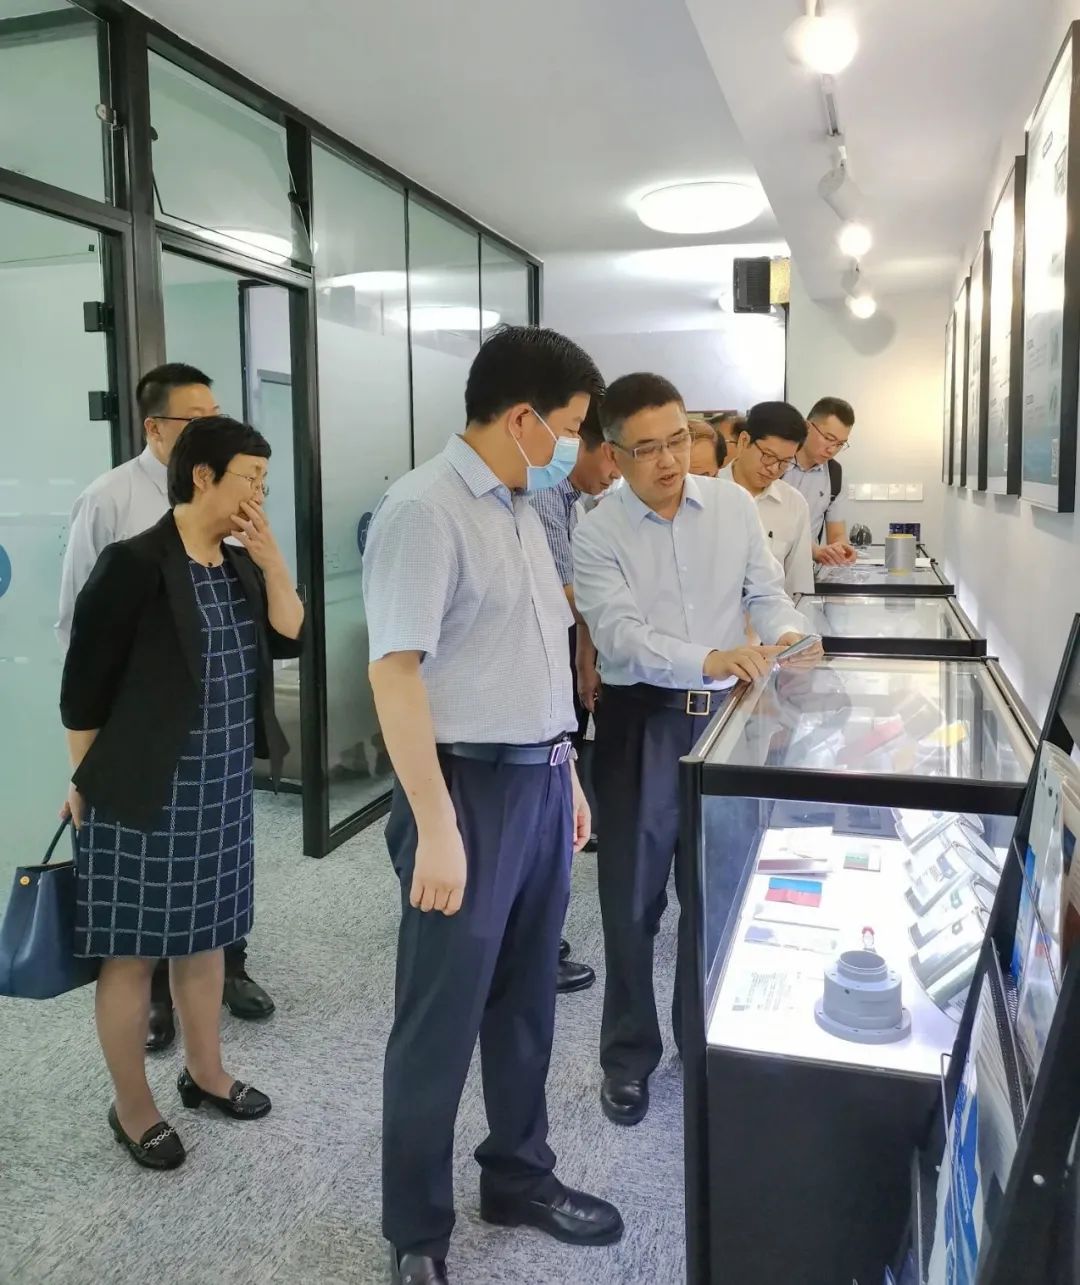 葫芦岛市政府合作交流团来访杭州烯鲸新材料科技有限公司